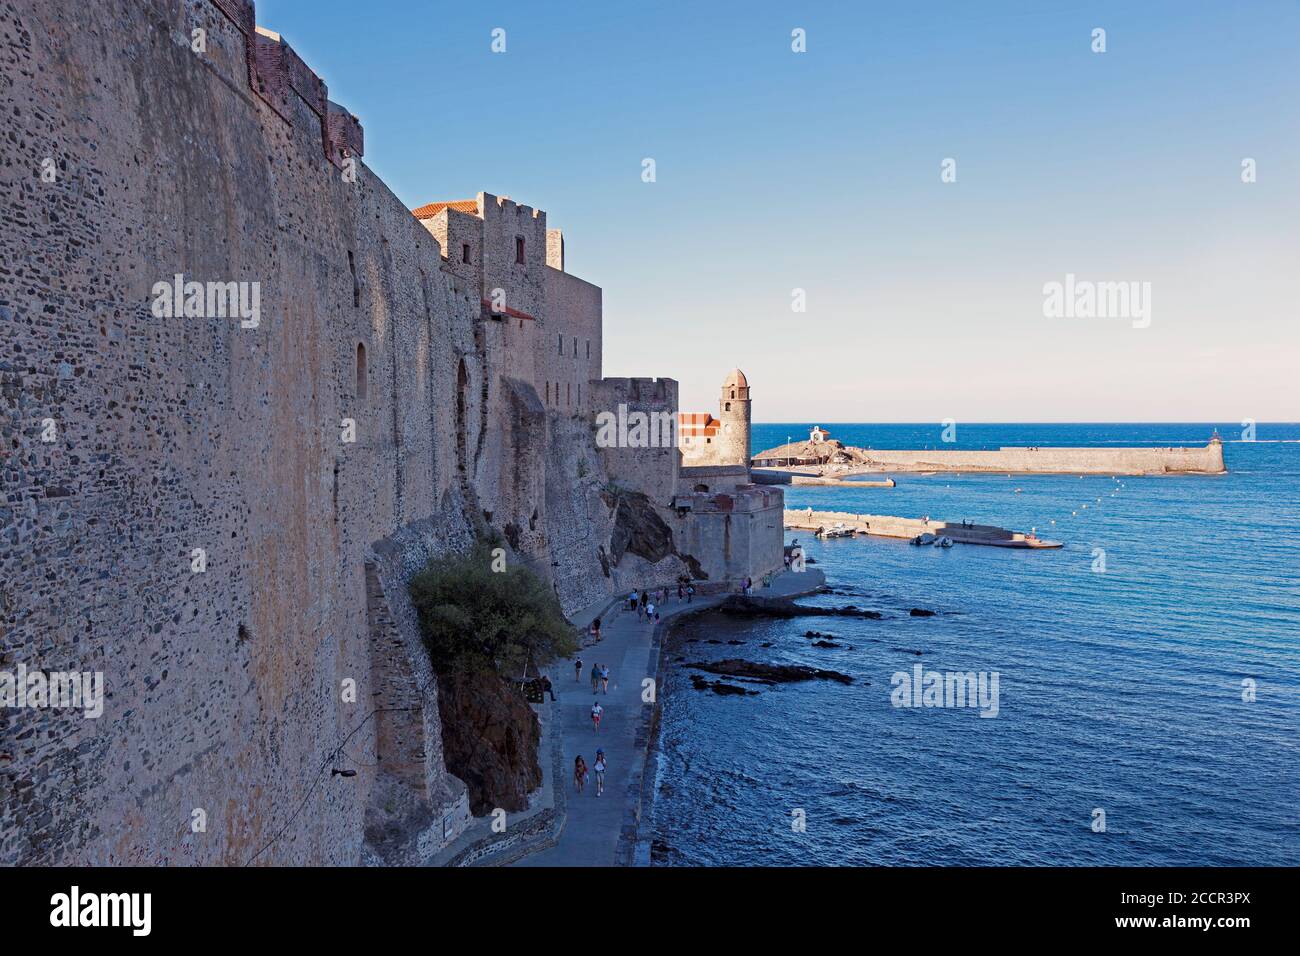 Le imponenti mura del Château Royal de Collioure, nella pittoresca località balneare e porto di Collioure, nel sud della Francia. Foto Stock